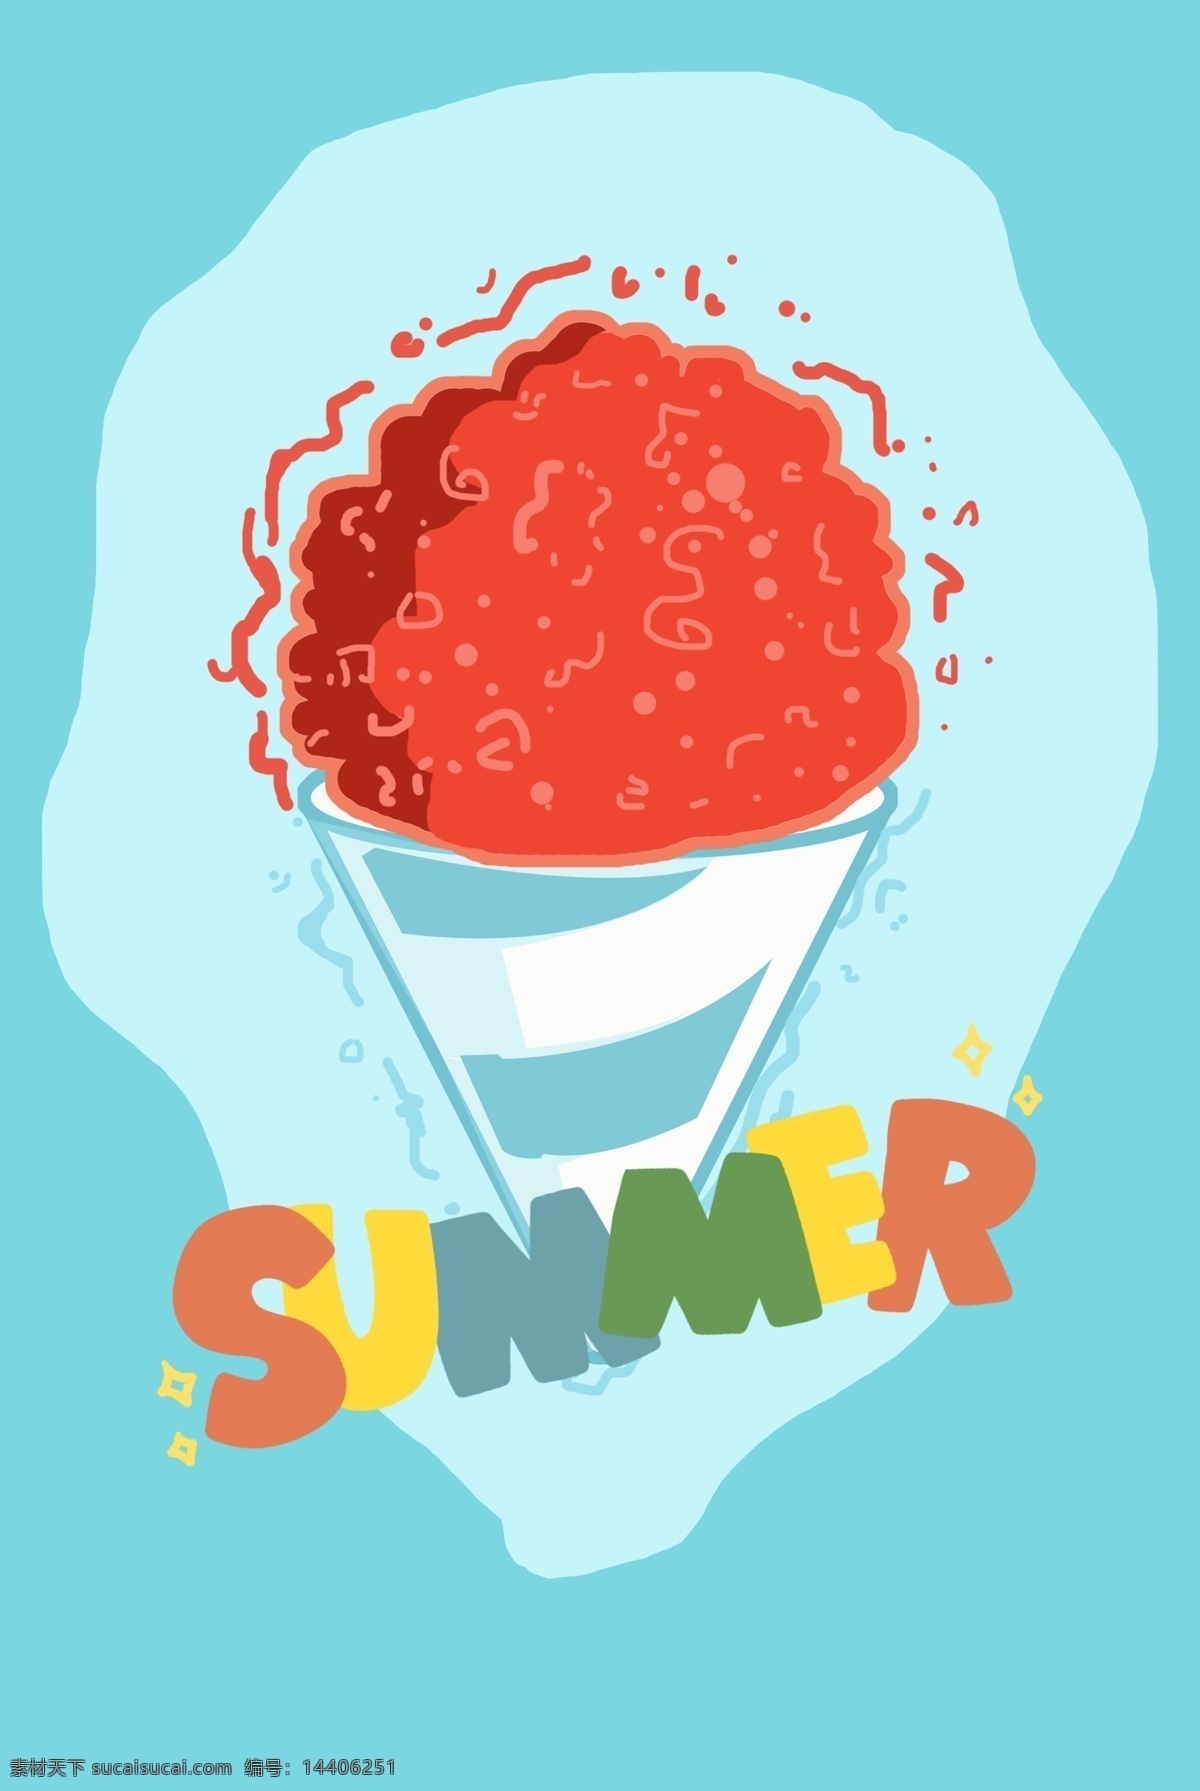 清爽 夏日 冰淇淋 海报 清爽夏日 草莓味冰淇淋 蓝色背景 彩色细塘 缤纷夏日 清爽清新风格 涂鸦 夏季海报 促销海报